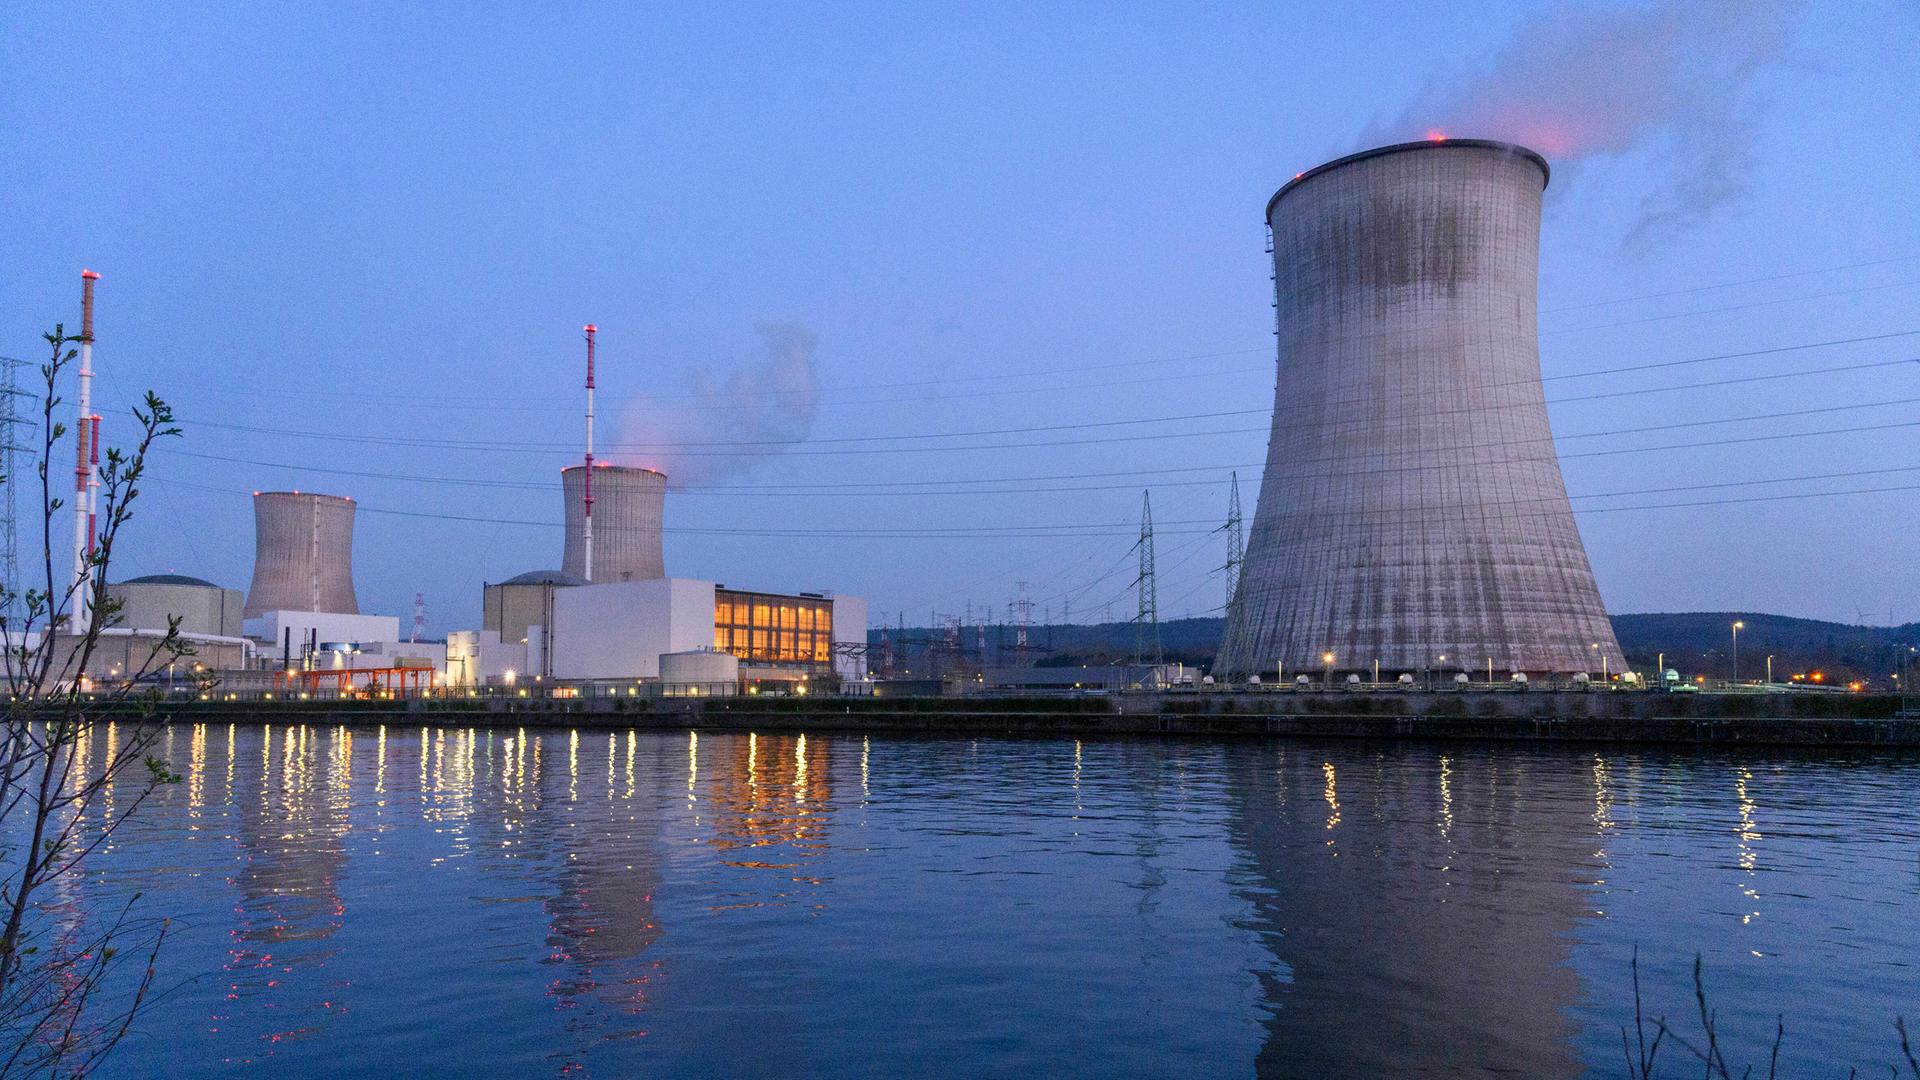 Das Kernkraftwerk Tihange besteht aus drei Blöcken mit Druckwasserreaktoren. Block 3 soll nun zehn Jahre länger laufen. Der Atomausstieg war ursprünglich bis 2025 anvisiert.